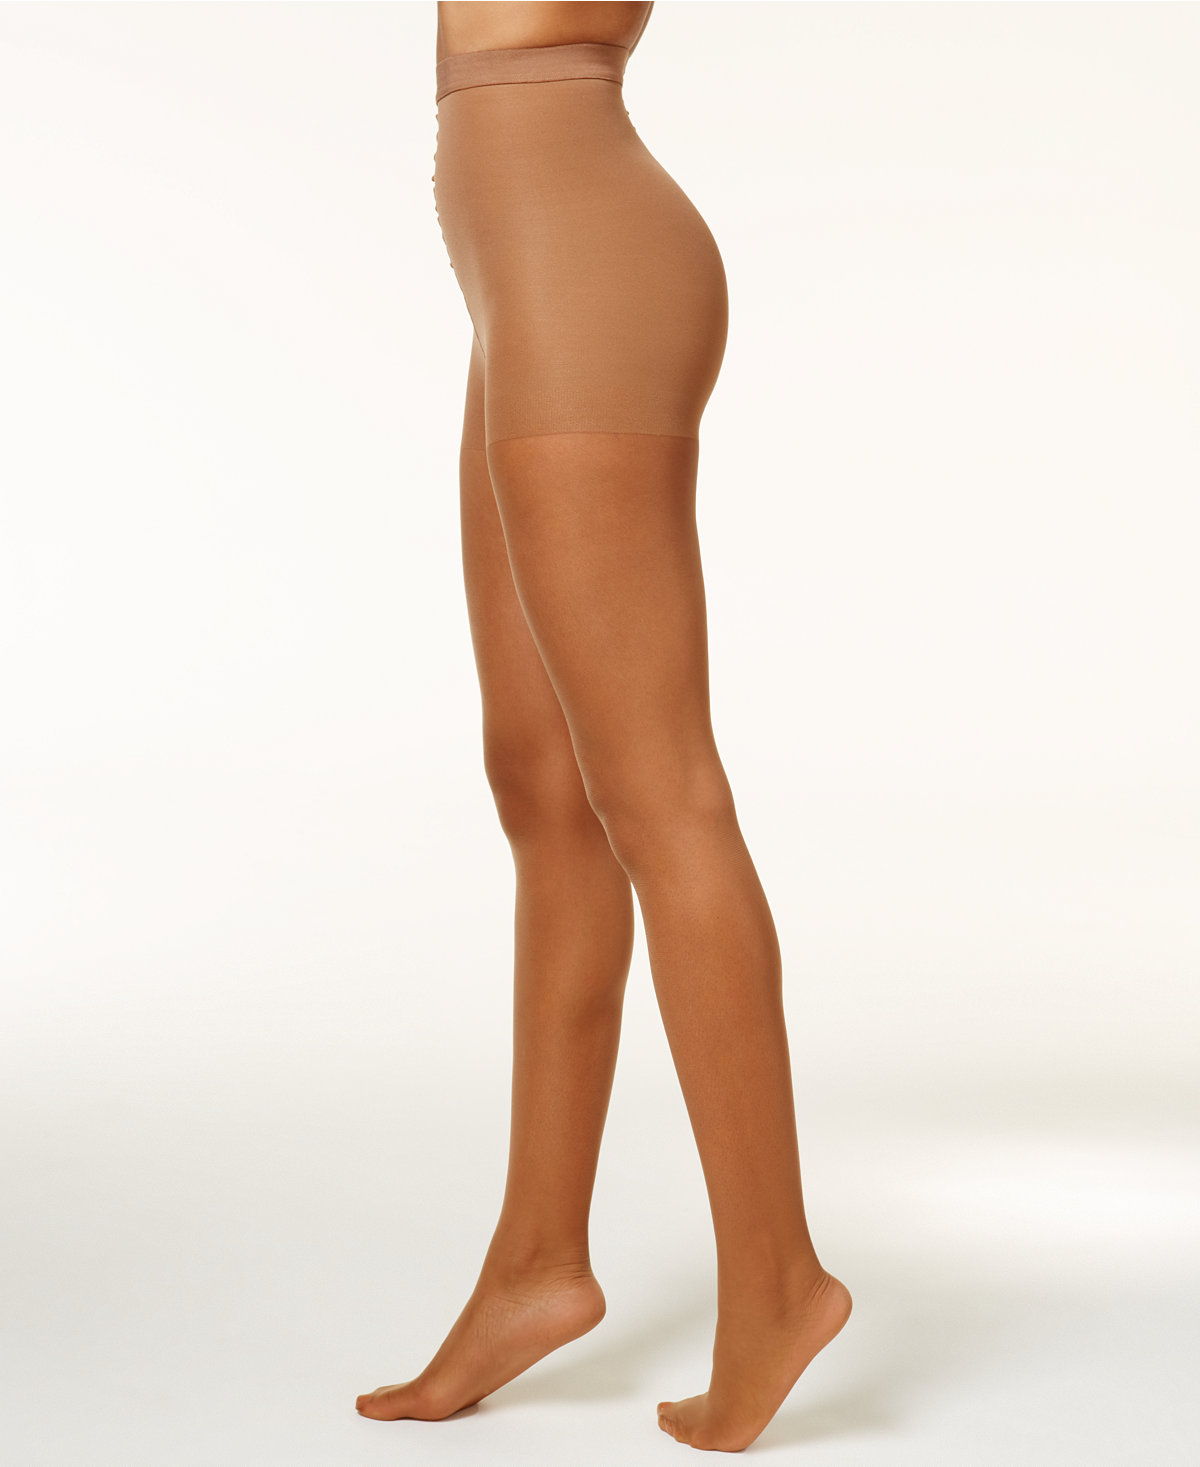 Tamara Calendar Girl Pantyhose CONTROL TOP with Feet